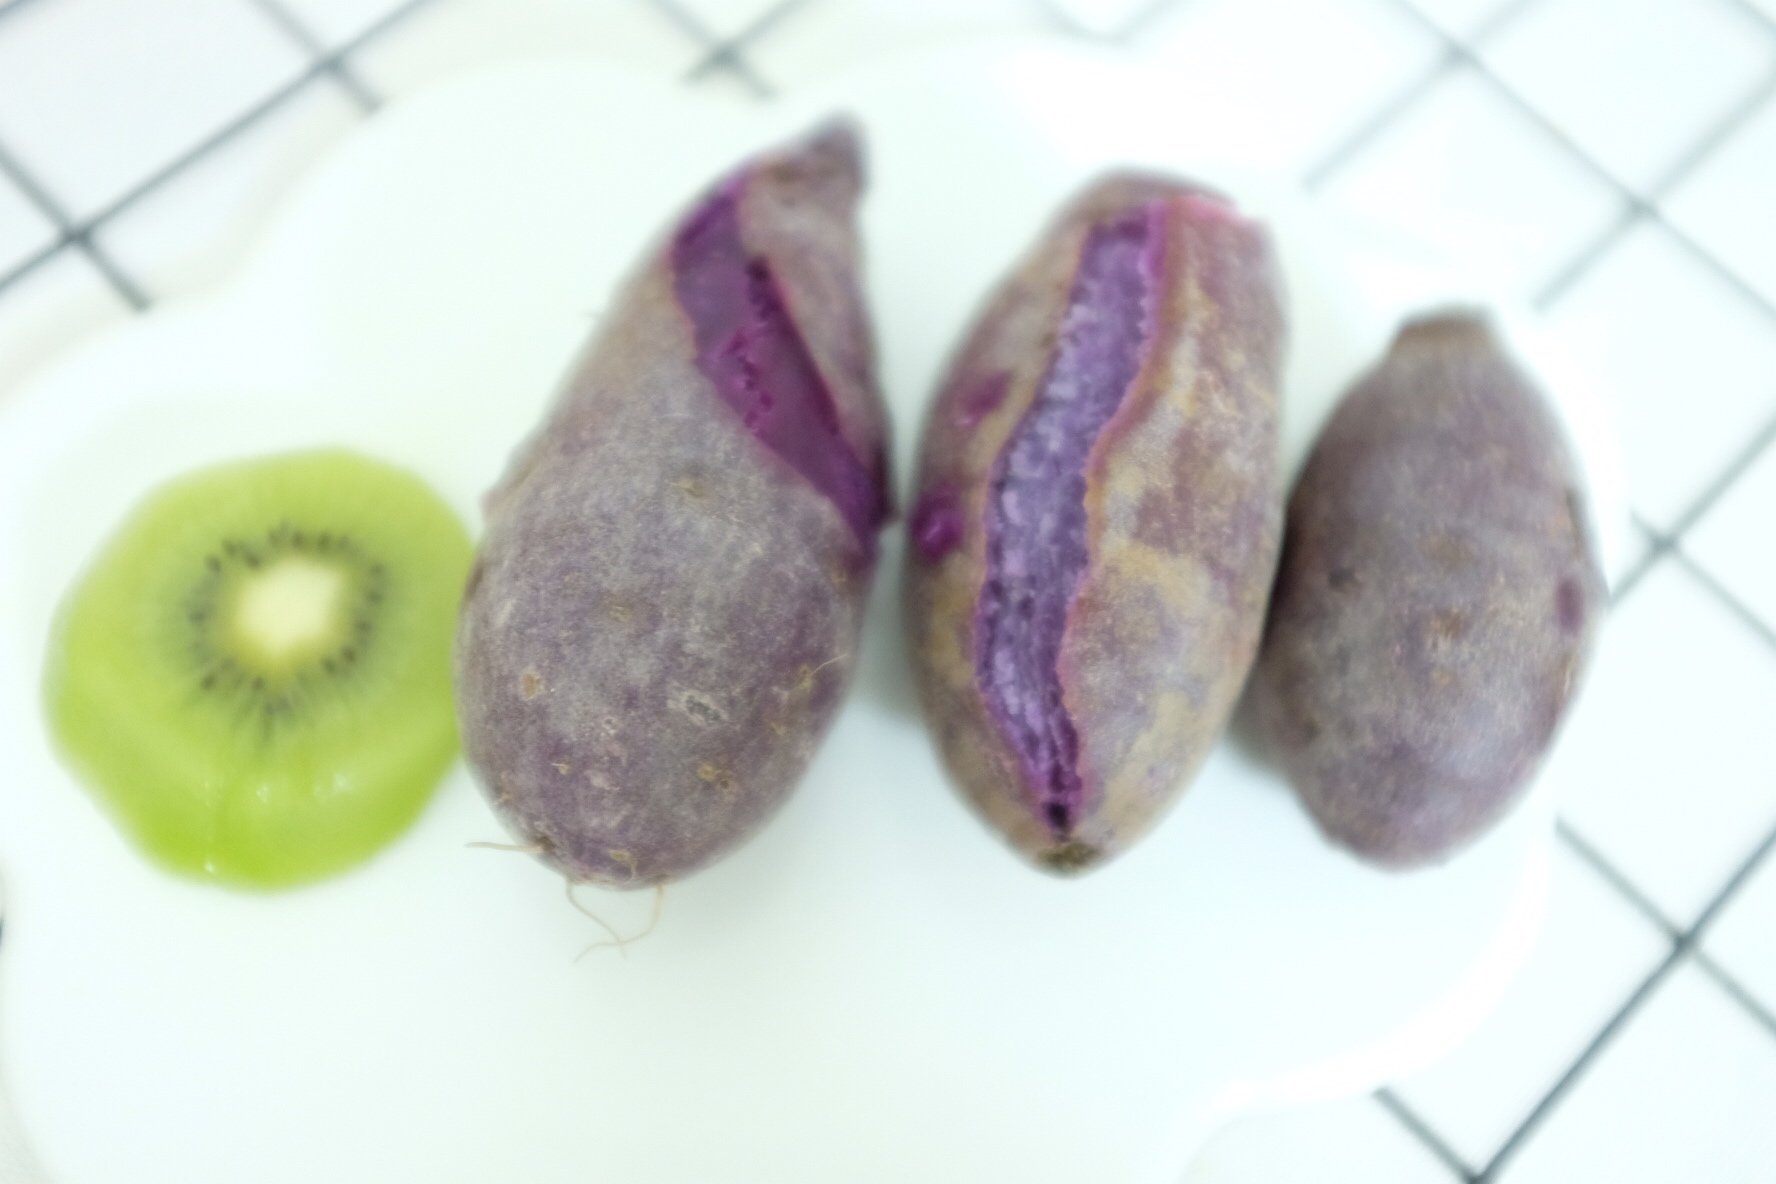 蒸紫薯的做法